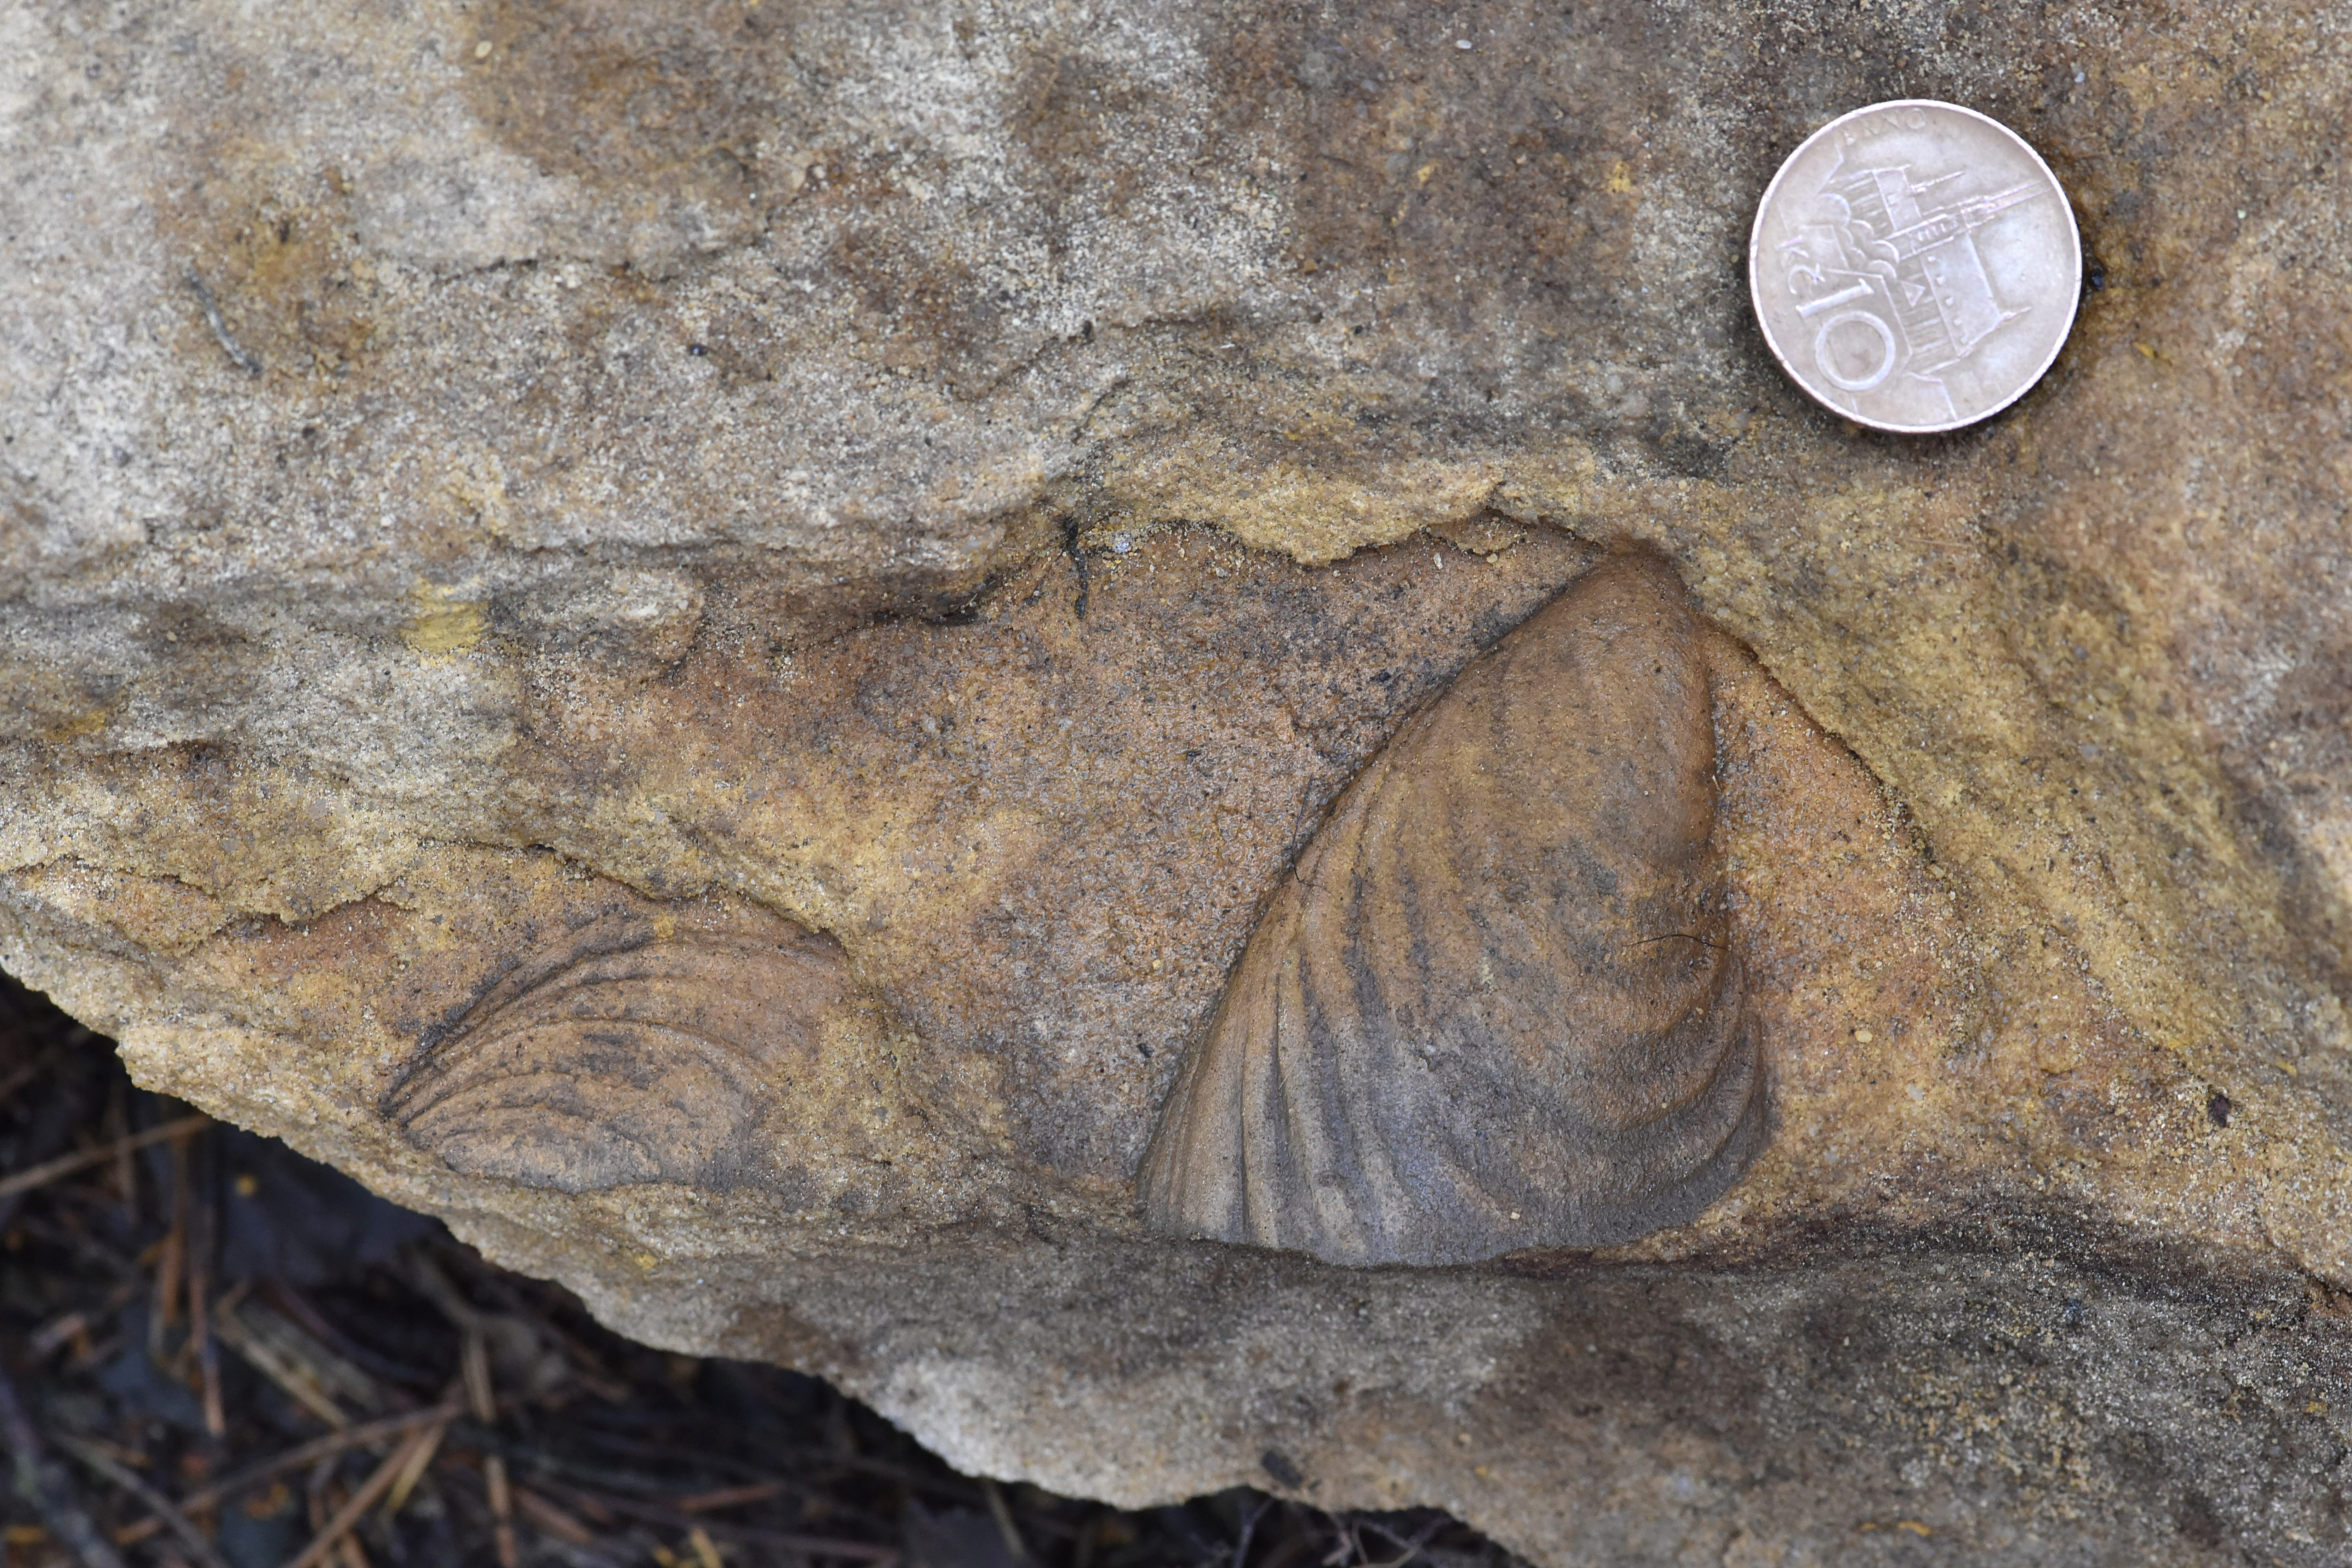 Otisk fosílie v pískovci, vedle kterého jako měřítko velikosti leží mince